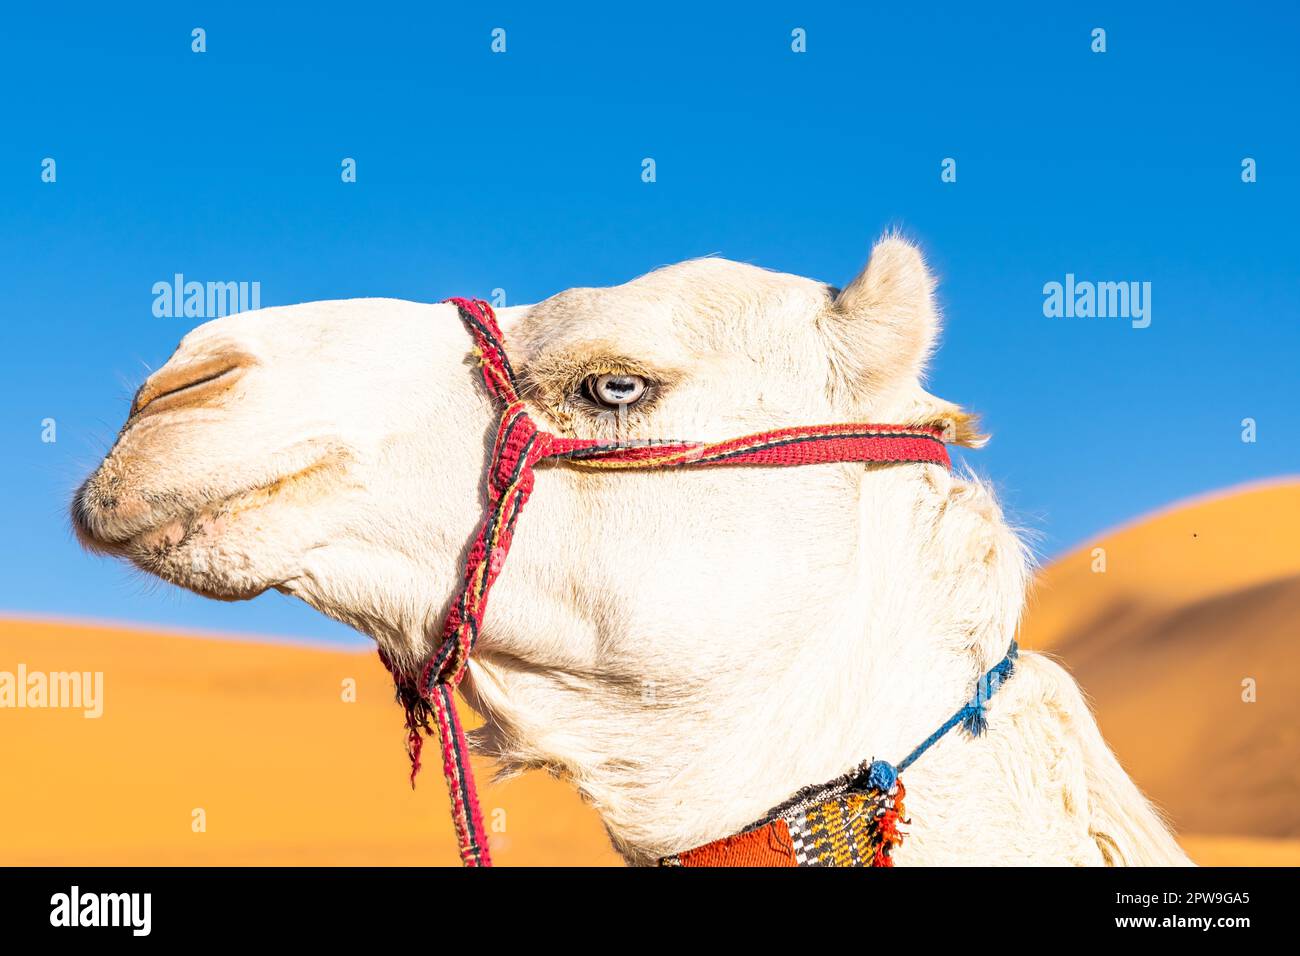 Cammello dromedario bianco con occhi blu. Profilo laterale testa ripresa ritratto in una vista dal basso angolo sul deserto del Sahara di Taghit, Algeria con un co arancione sfocato Foto Stock